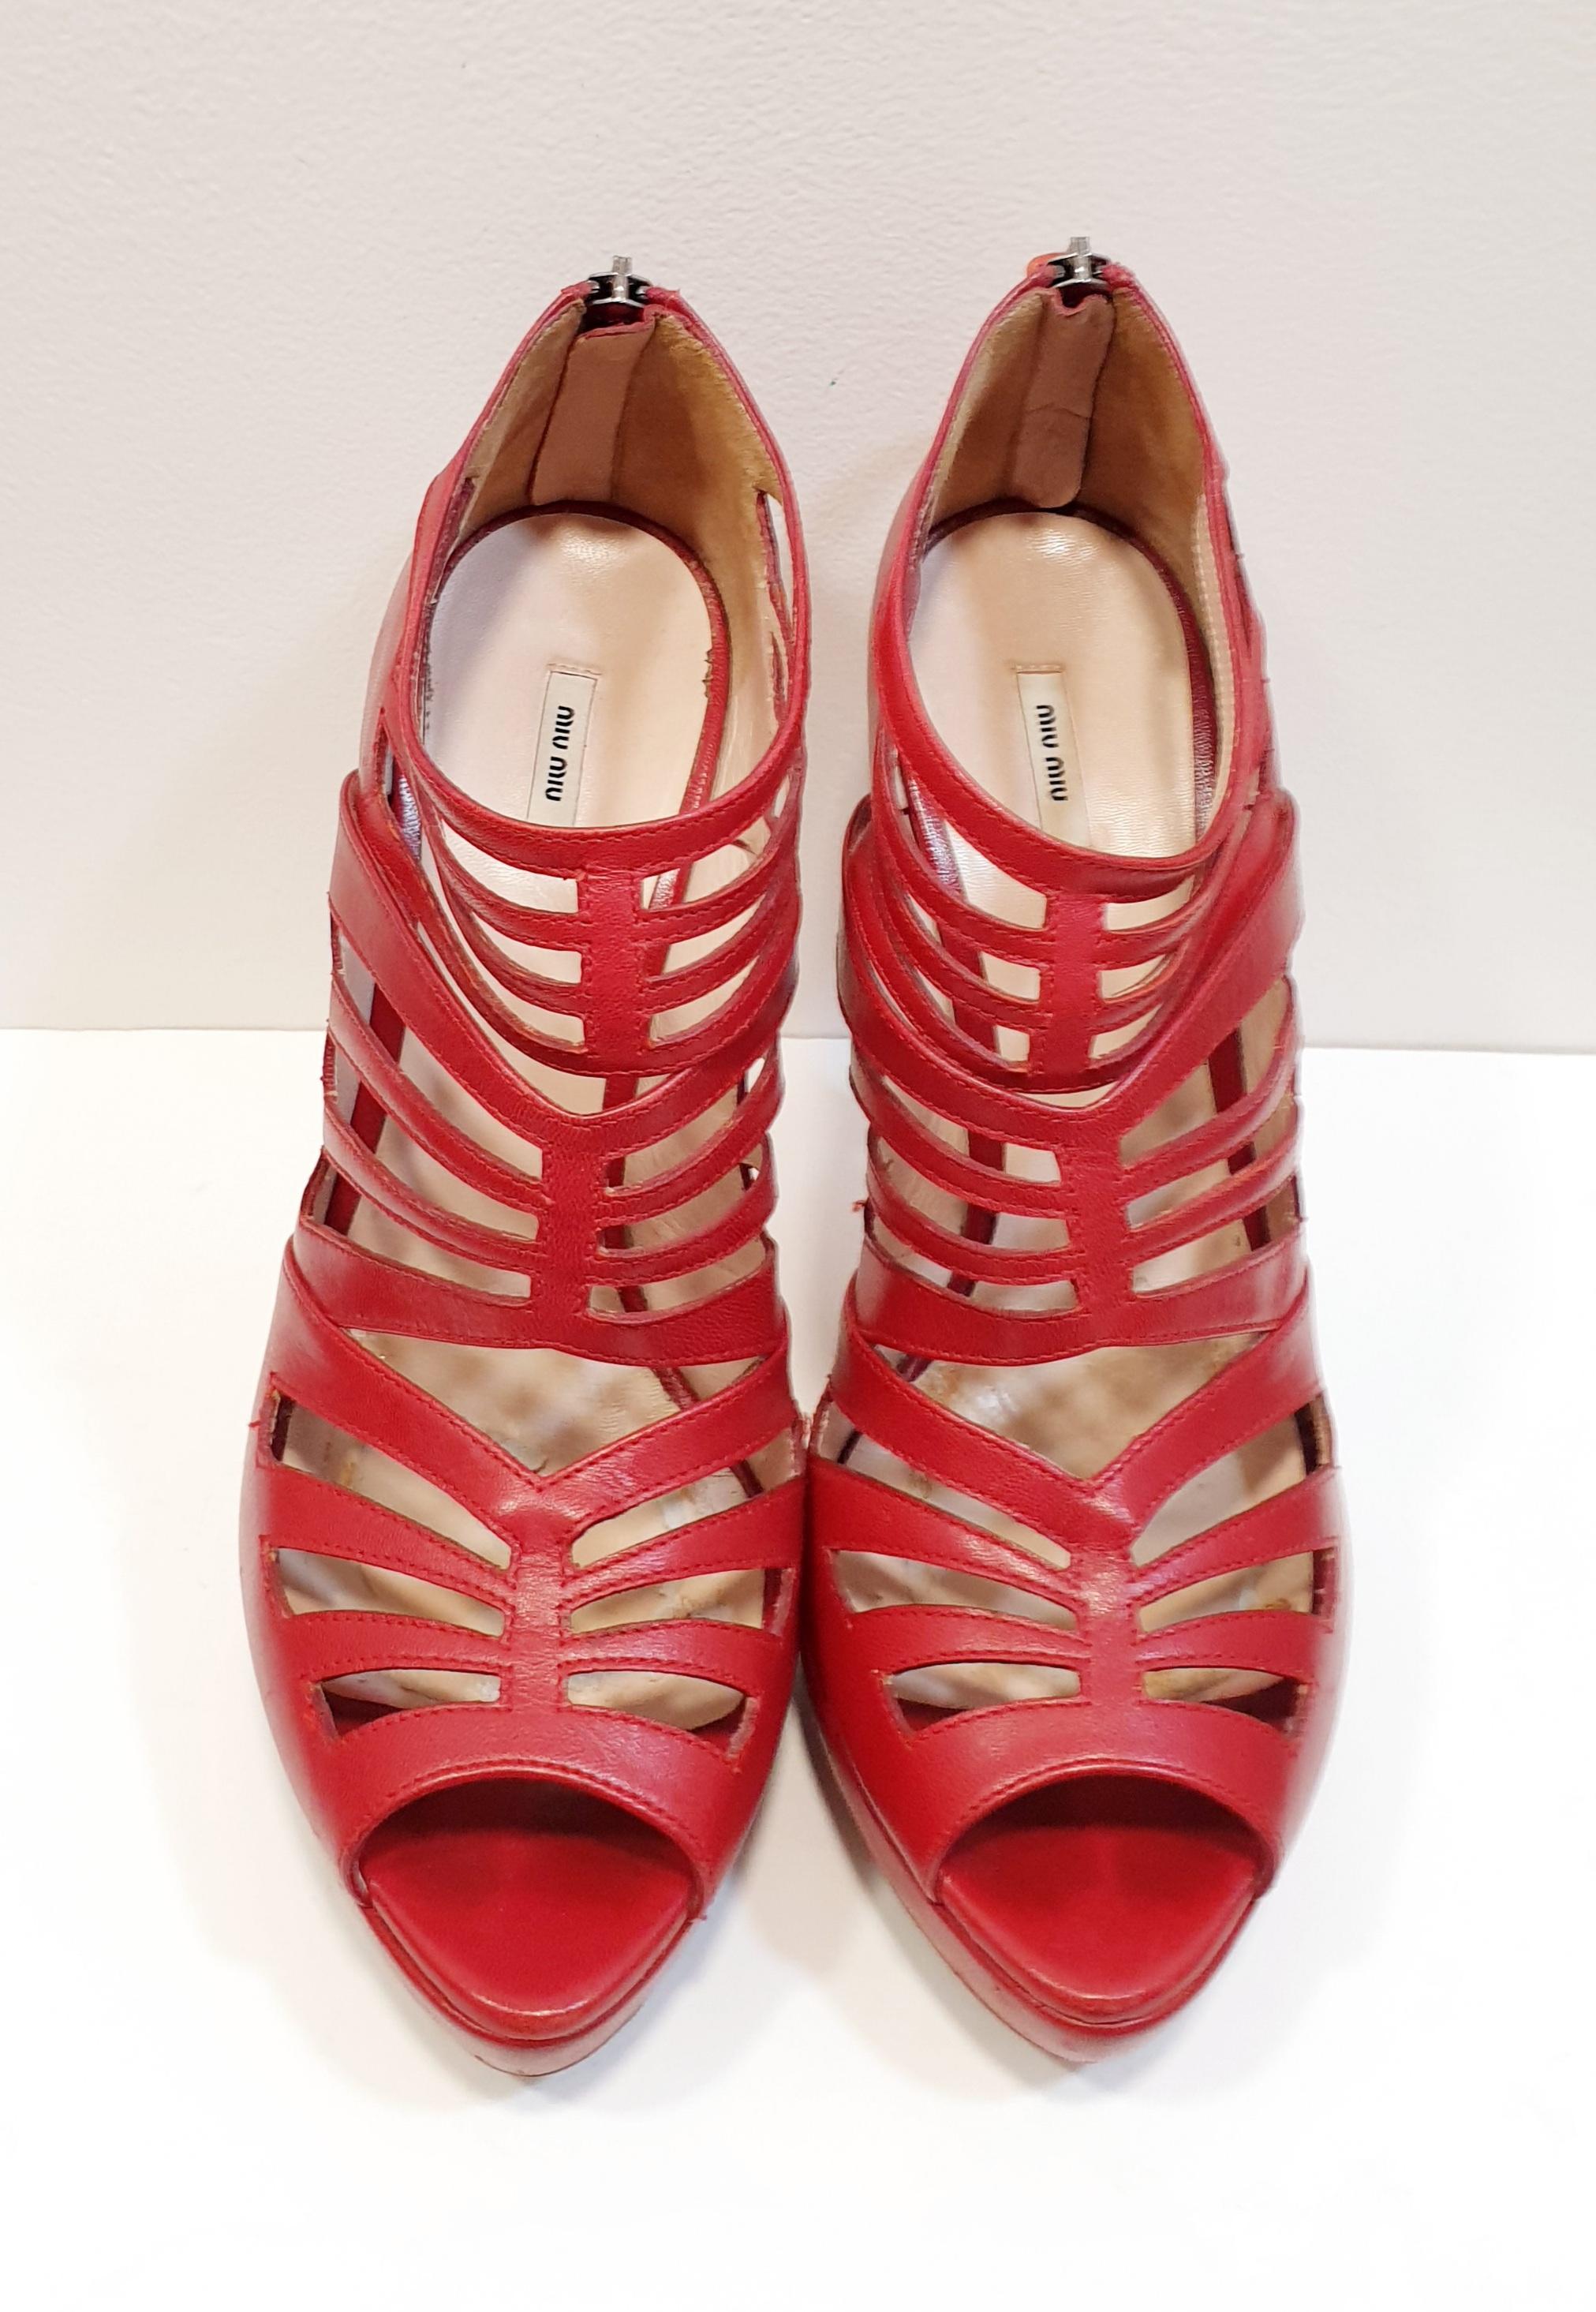 Chaussures à bout ouvert rouges de Miu Miu
Les semelles seront mises à neuf pour être bonnes et imperméables. 
Année 2006
La boîte d'origine n'est pas disponible.
Miu Miu est l'expression la plus débridée de la créativité de Miuccia Prada.